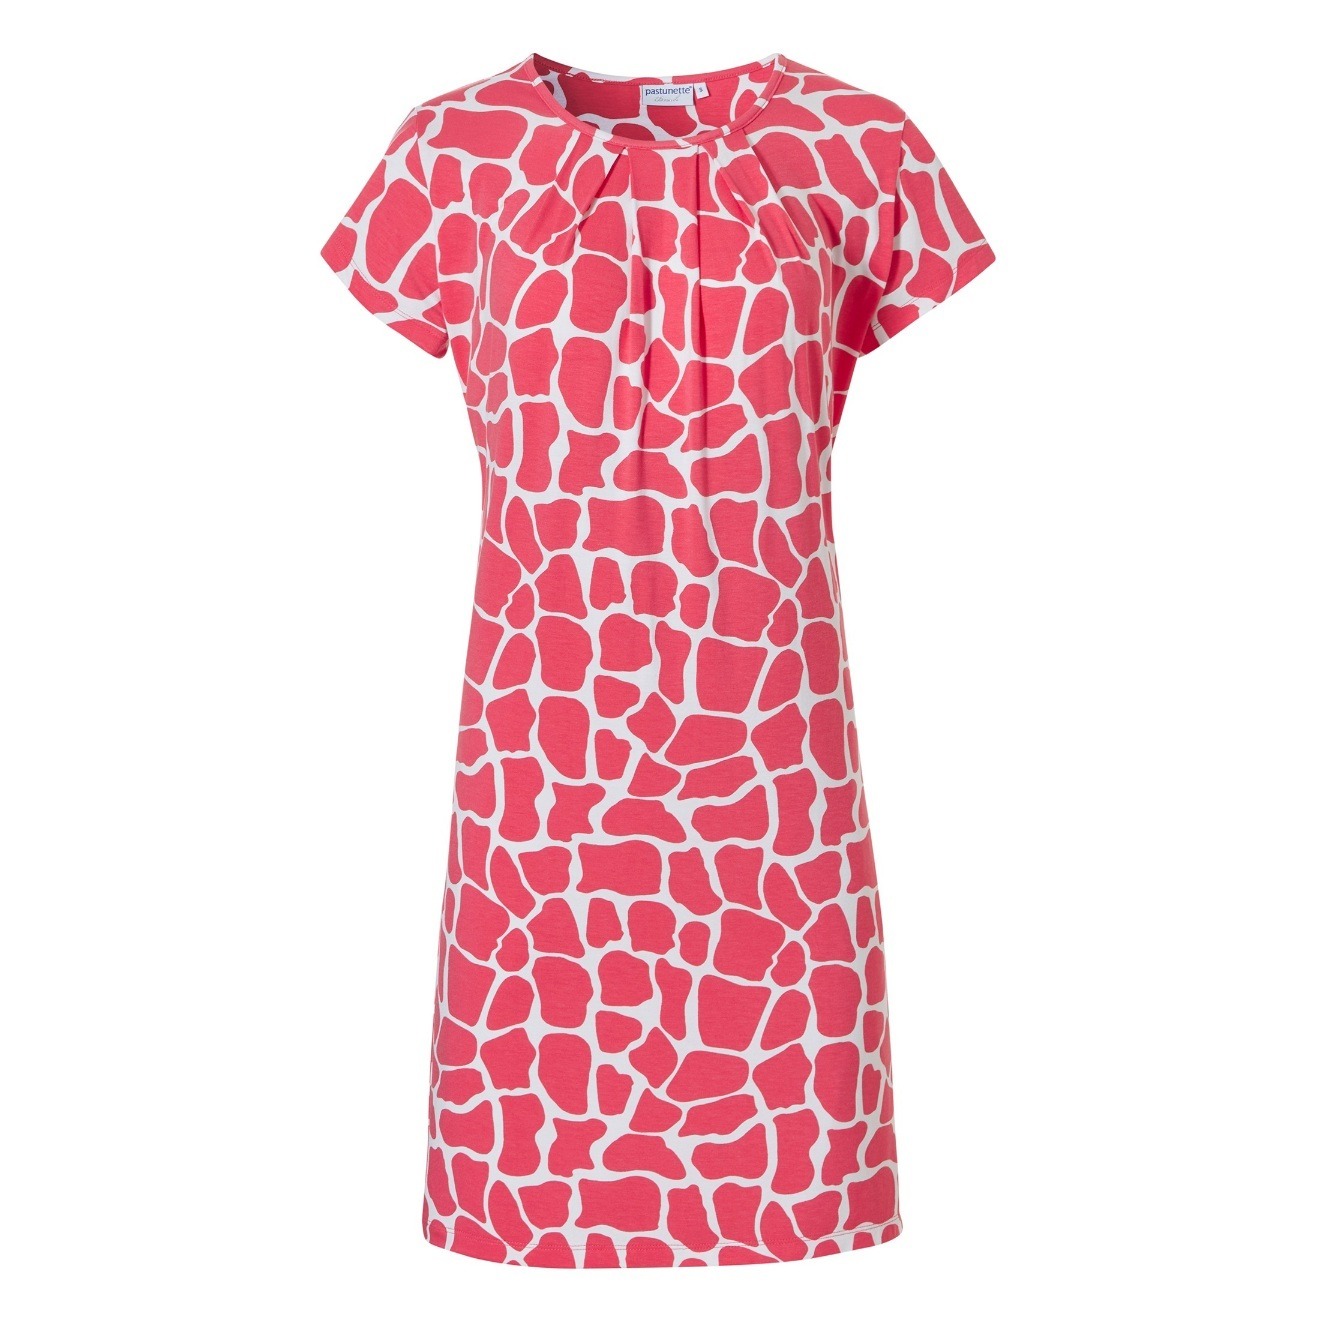 Leichtes Sommerkleid in pink weiß gemustert und kurzem Arm bei Mode Sabine Lemke in Winnenden und im Onlineshop